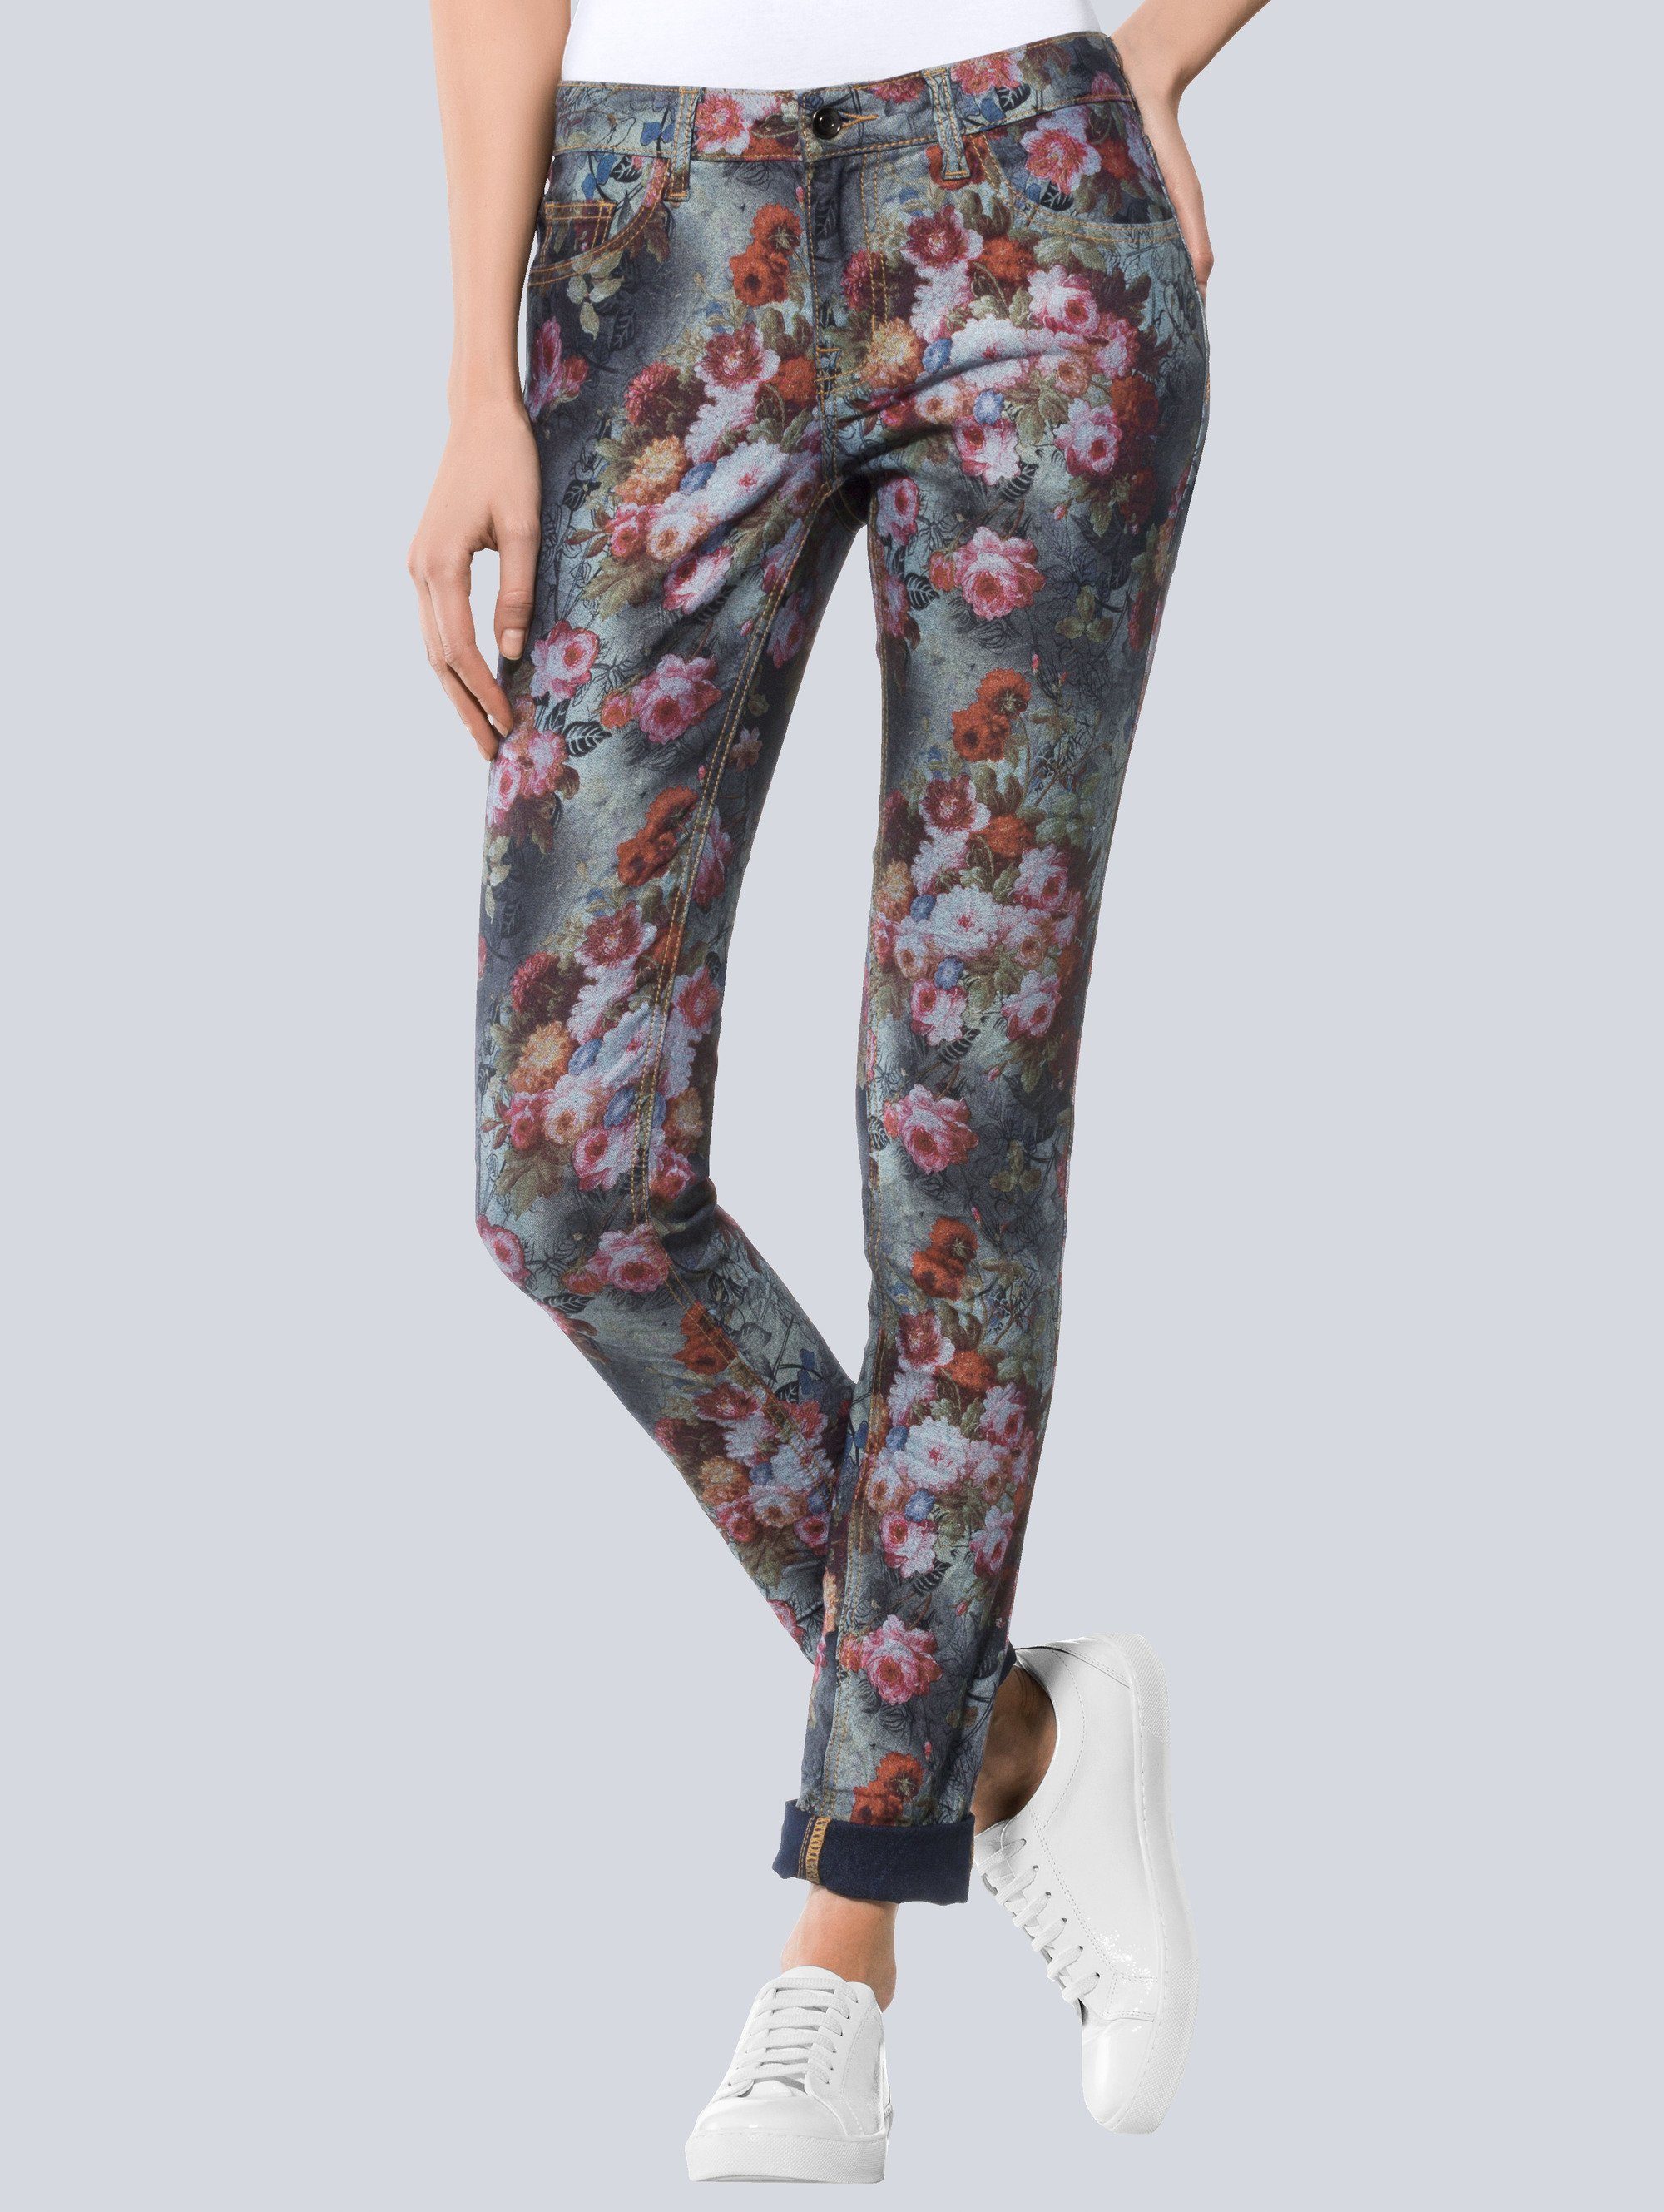 Alba Moda Jeans mit romantischem Blumenprint | OTTO